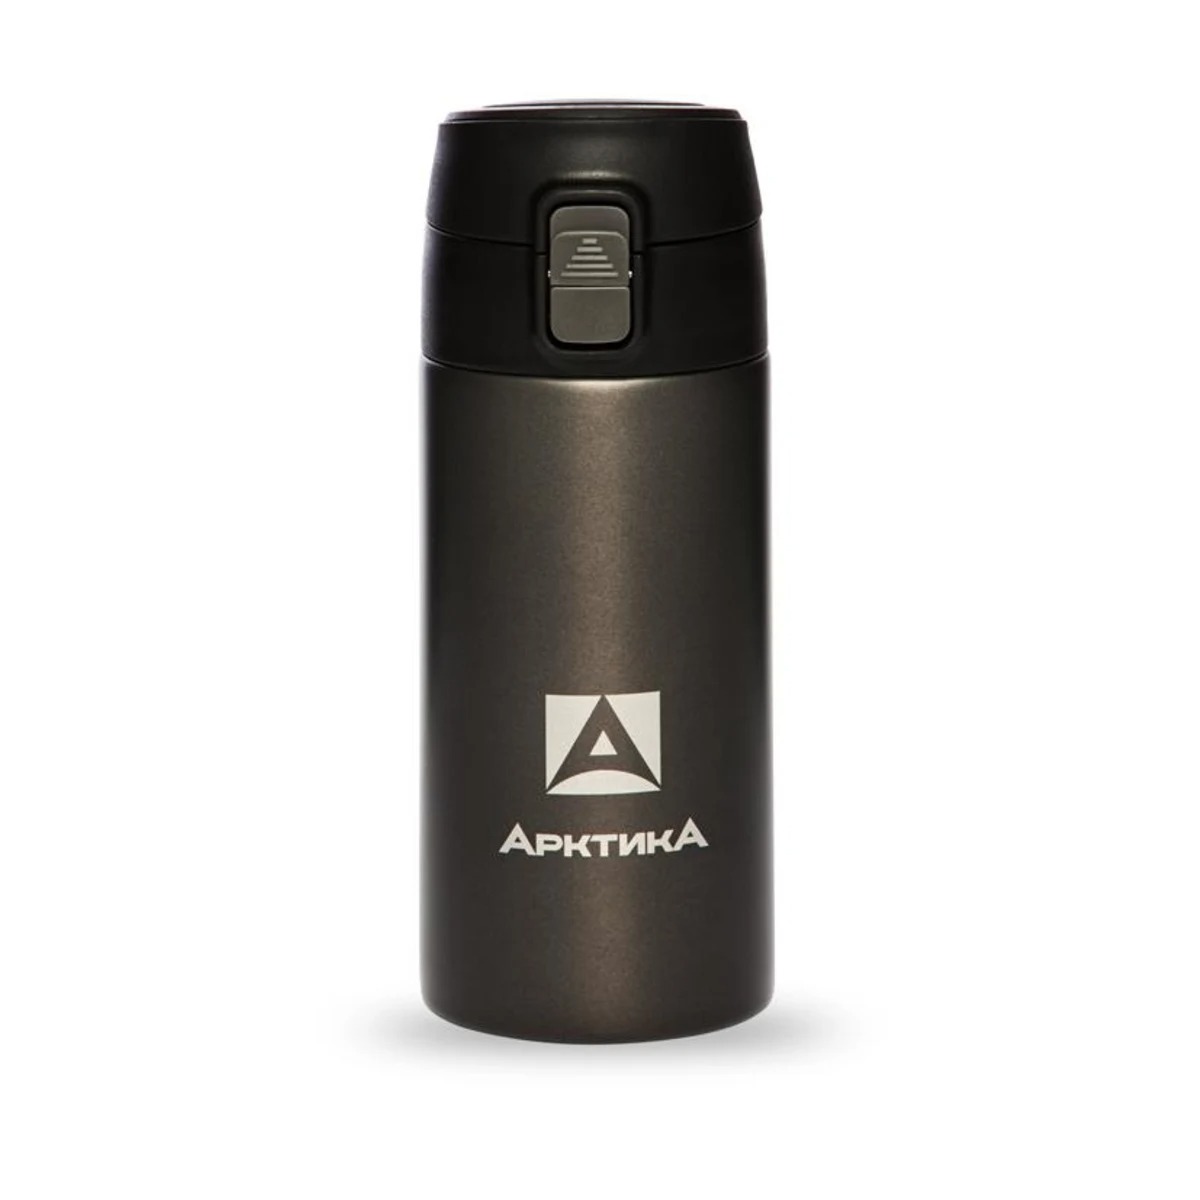 фото Ark-705-350 термос питьевой вакуумный, бытовой, тм арктика, 350 мл текстурный черный